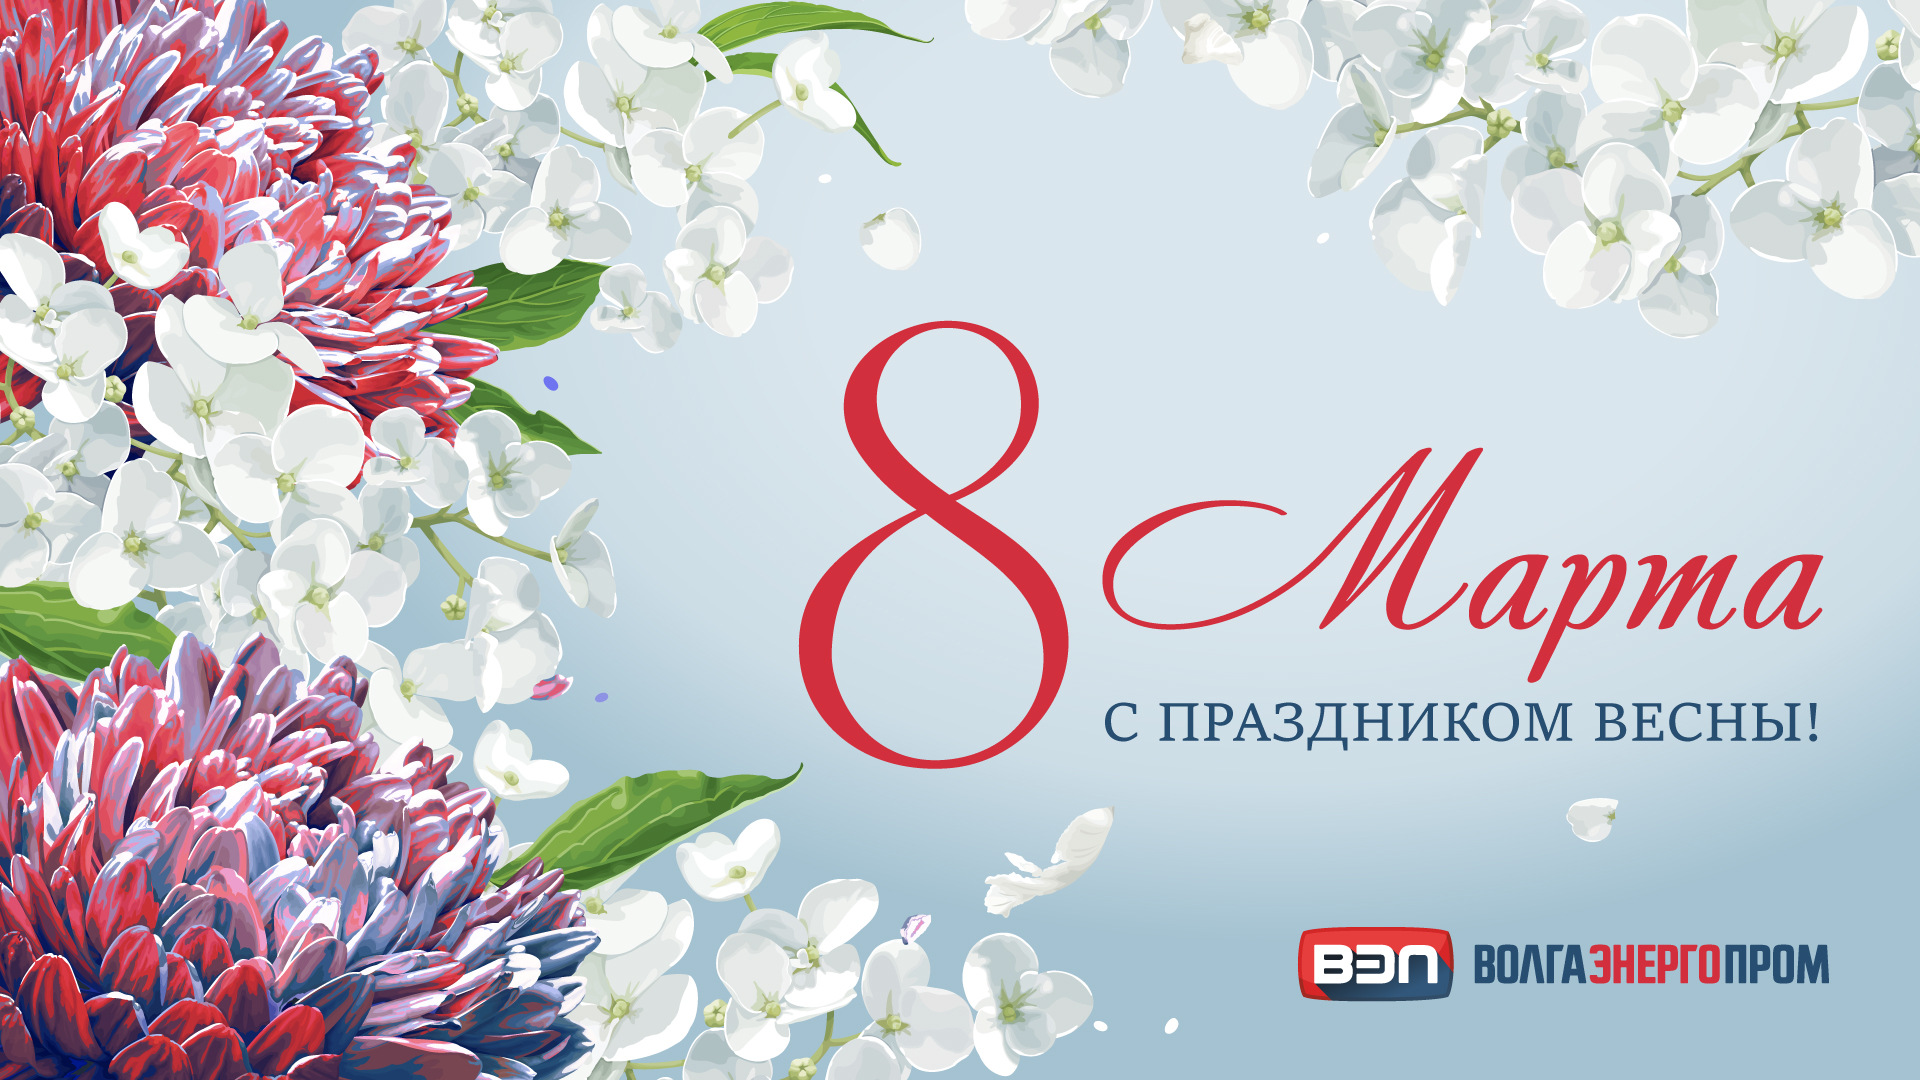 ТСК Волгаэнергопром поздравляет милых дам с Международным женским днем!